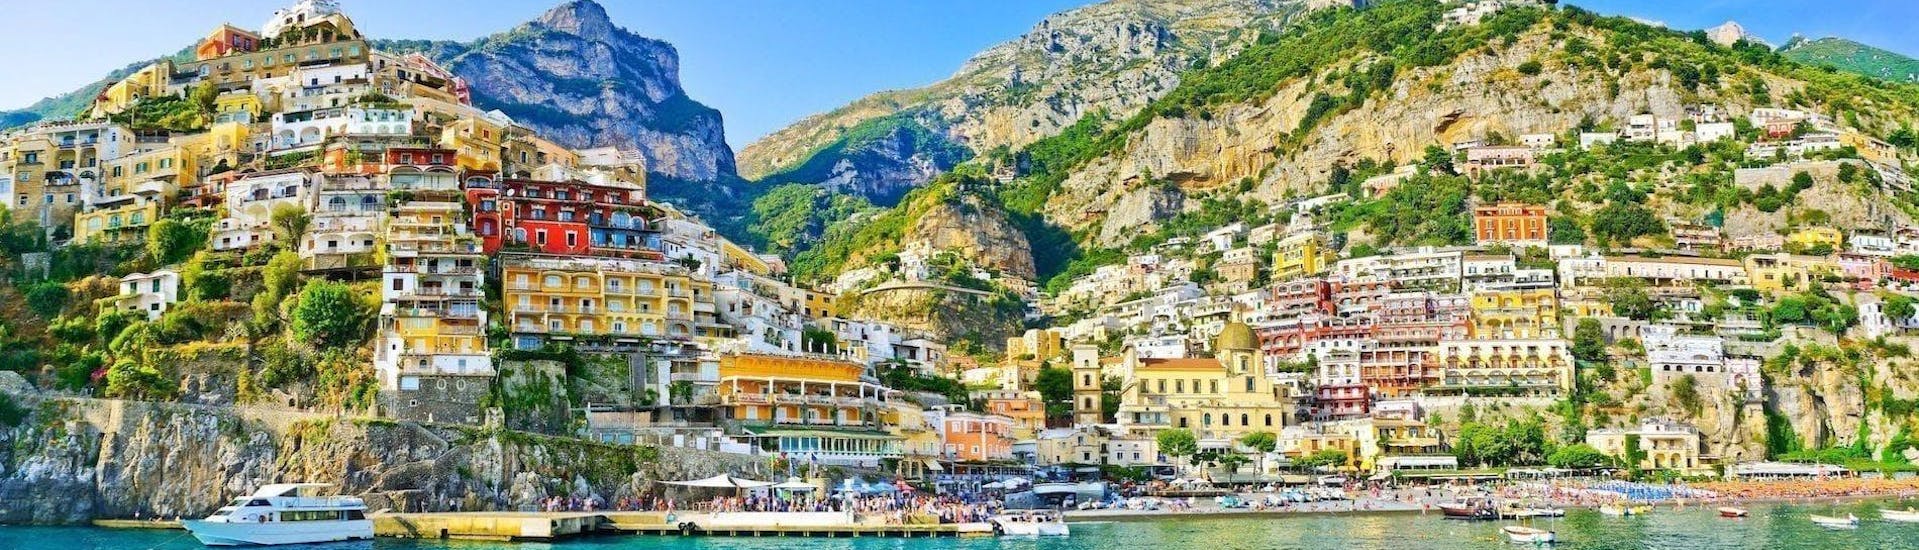 Der Blick auf Amalfi vom Meer aus ist einer der Höhepunkte dieser Privaten Bootstour von Sorrent nach Positano und Amalfi mit You Know! Boat Sorrento